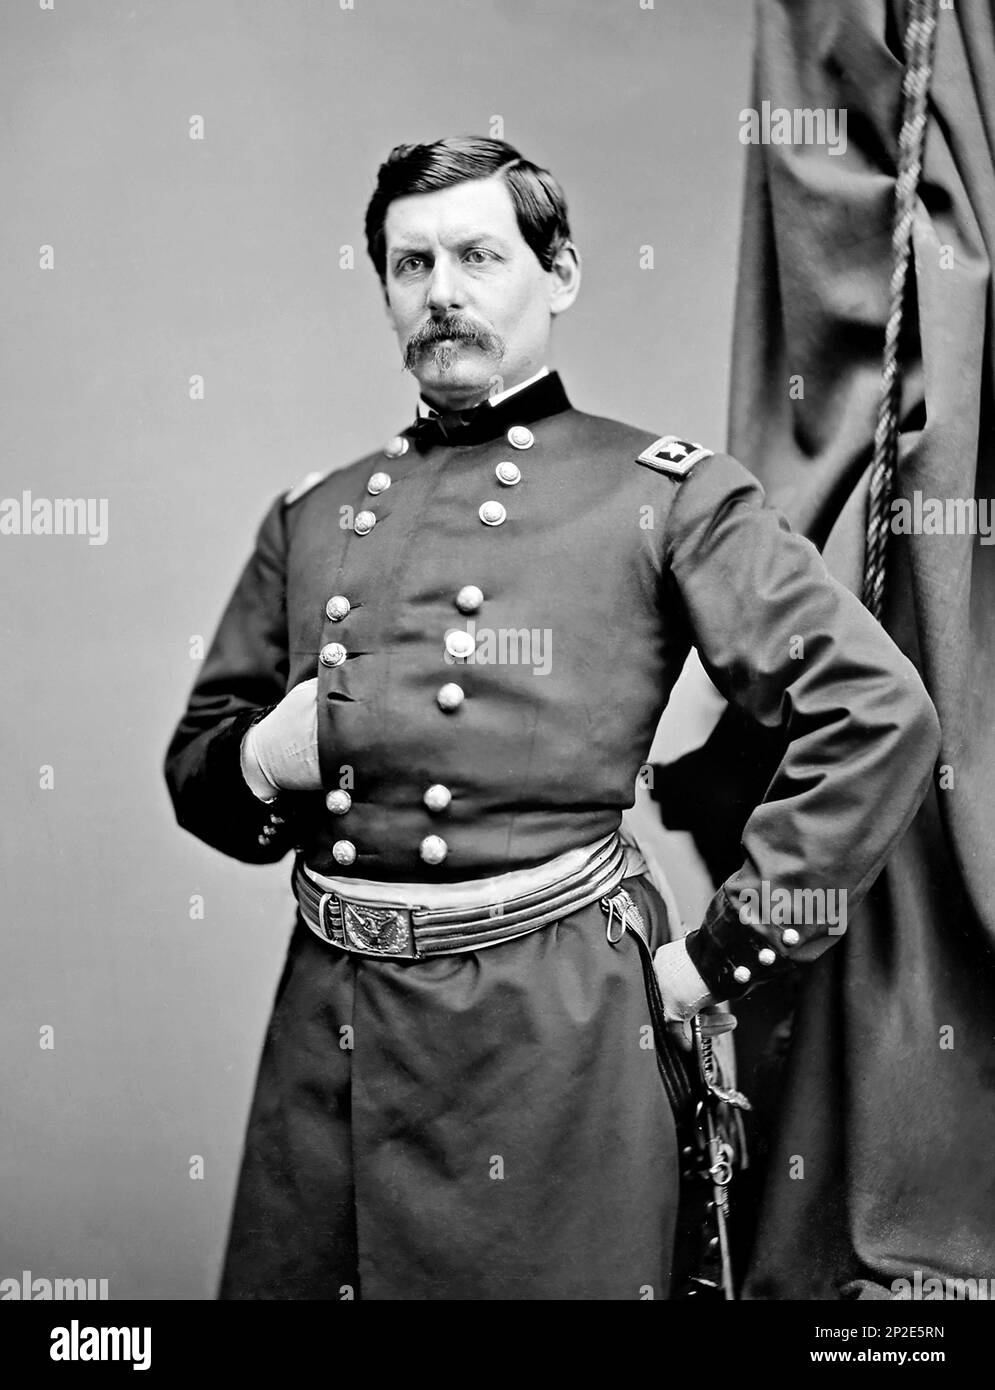 George B McClellan. Retrato del General de la Guerra Civil estadounidense, George Brinton McClellan (1826-1885) por Matthew Brady, c. 1860-65 Foto de stock